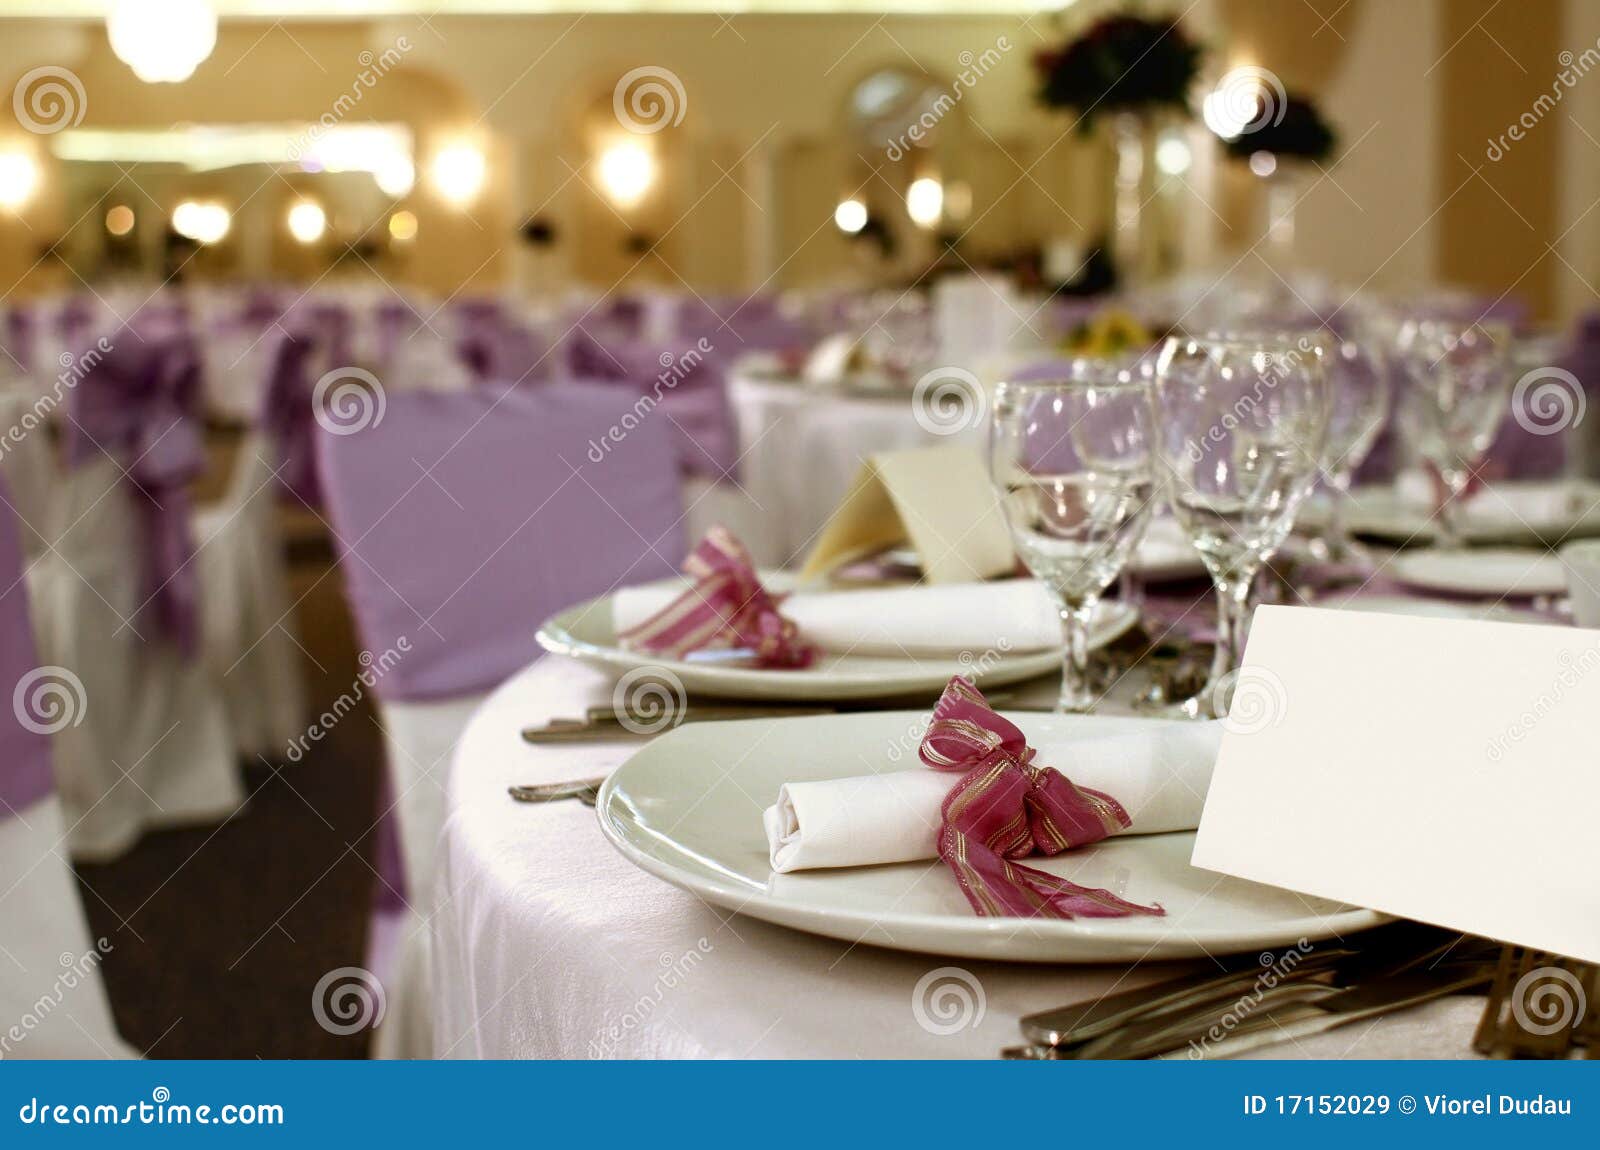 party table arrangement